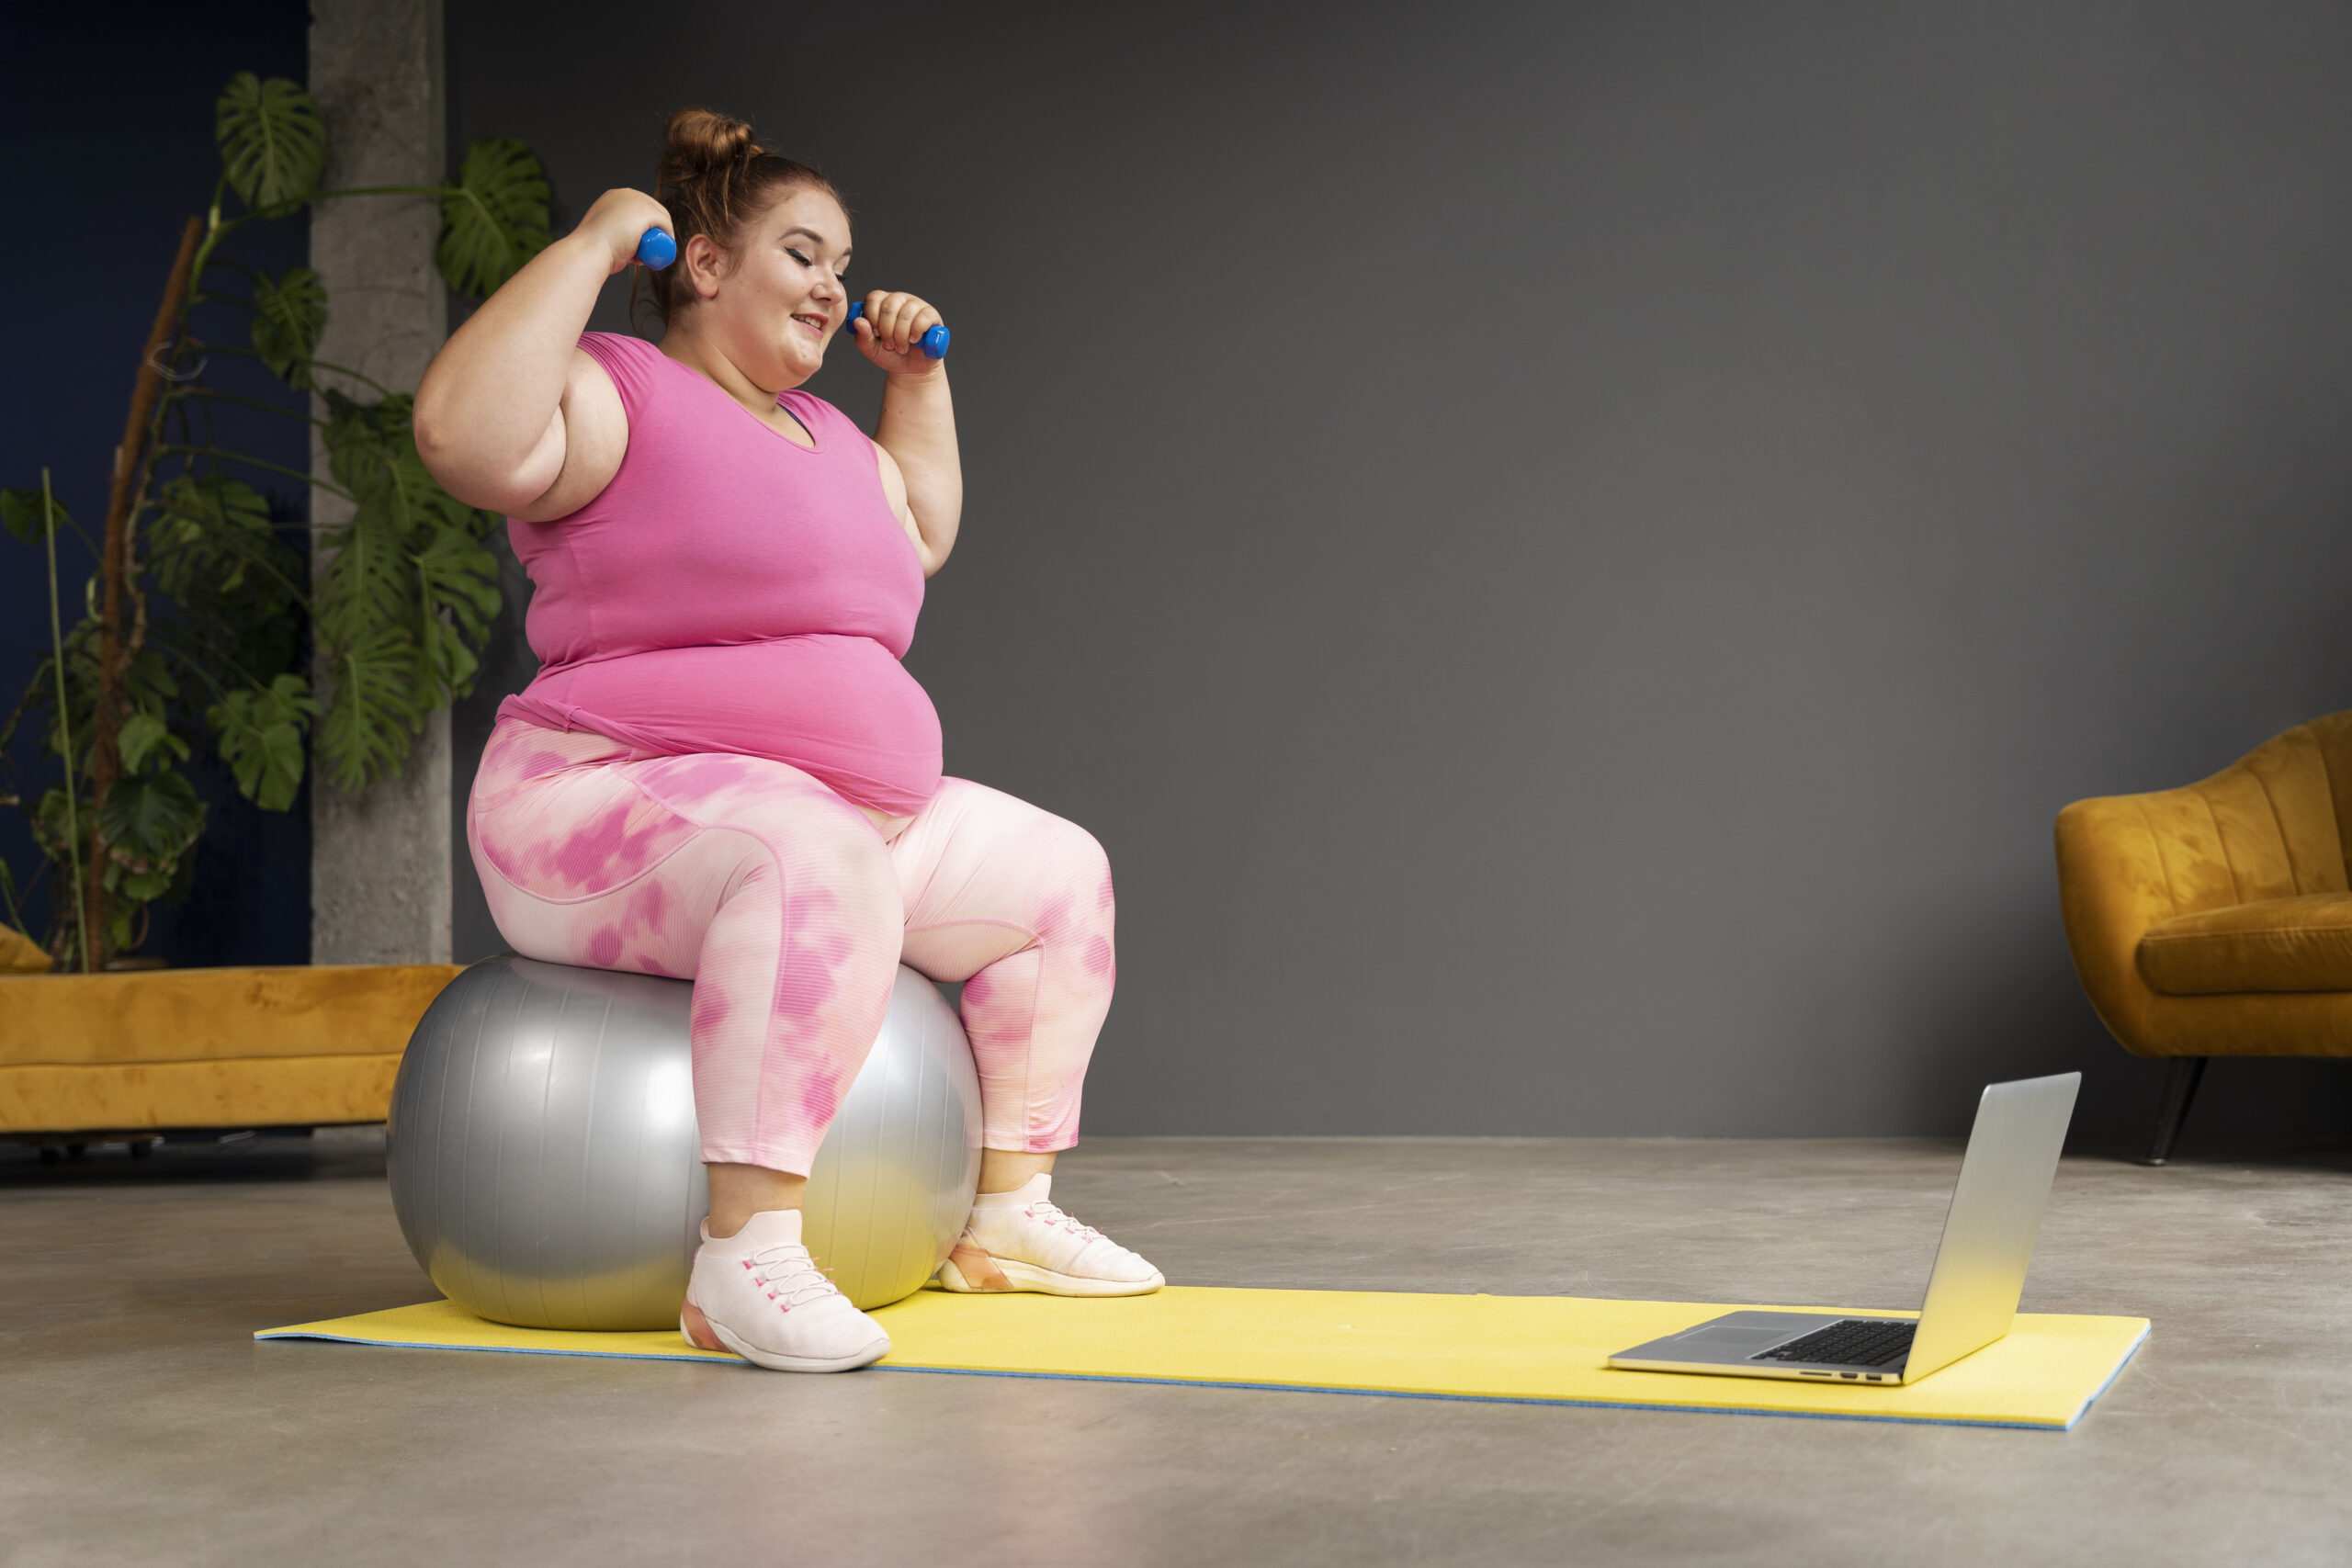 അമിതവണ്ണം സ്ത്രീകളിൽ|Obesity in women